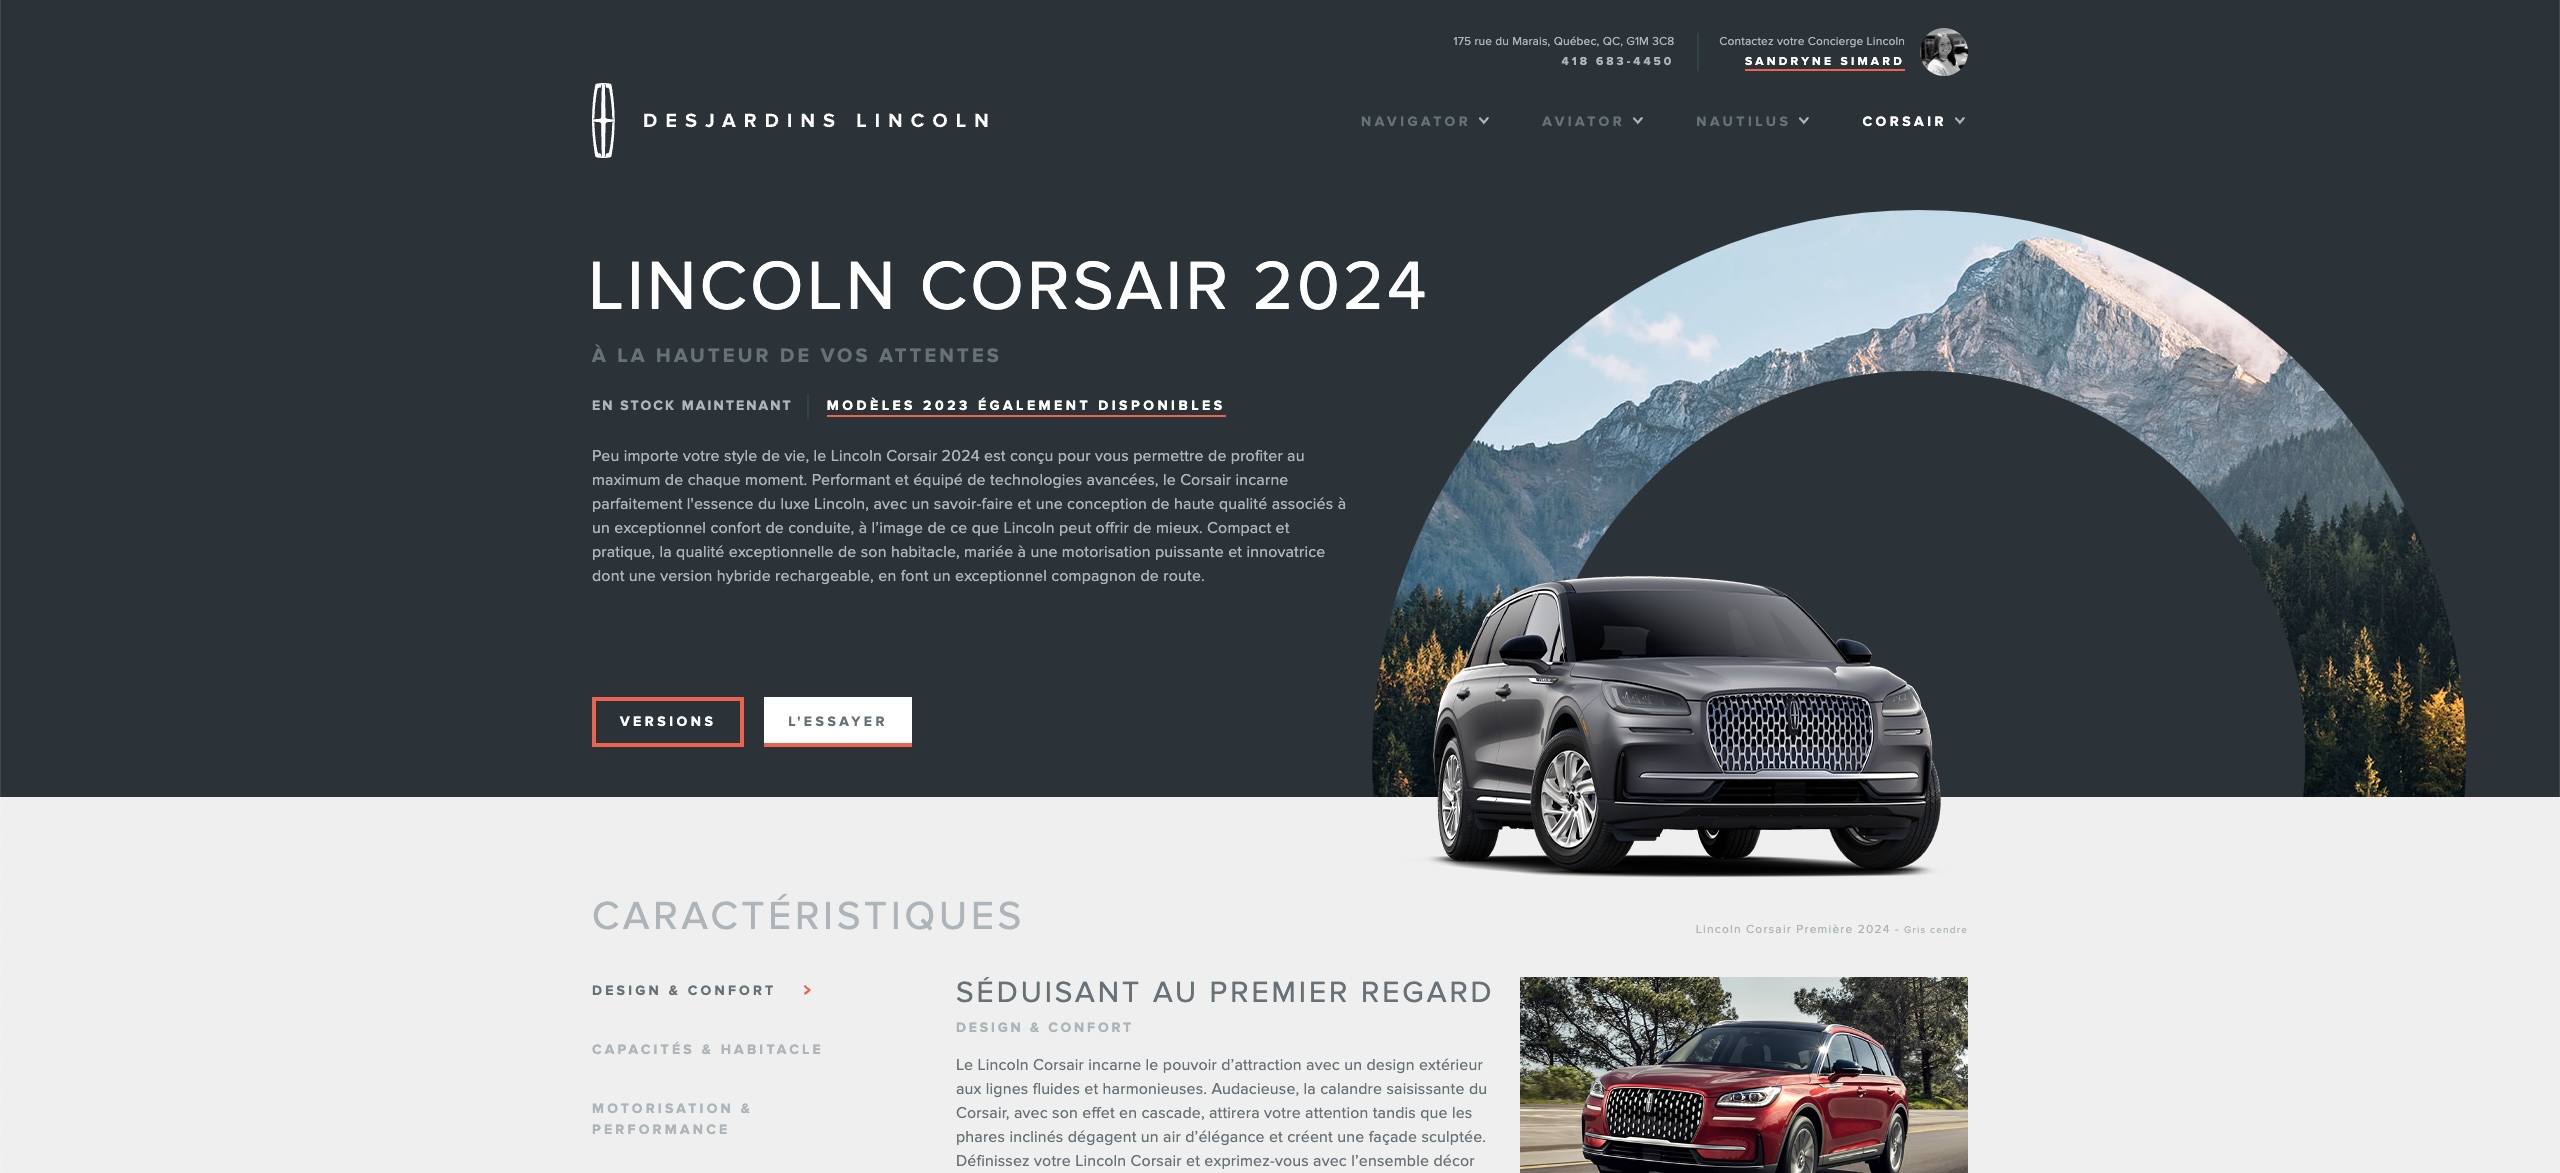 Lincoln Corsair 2024